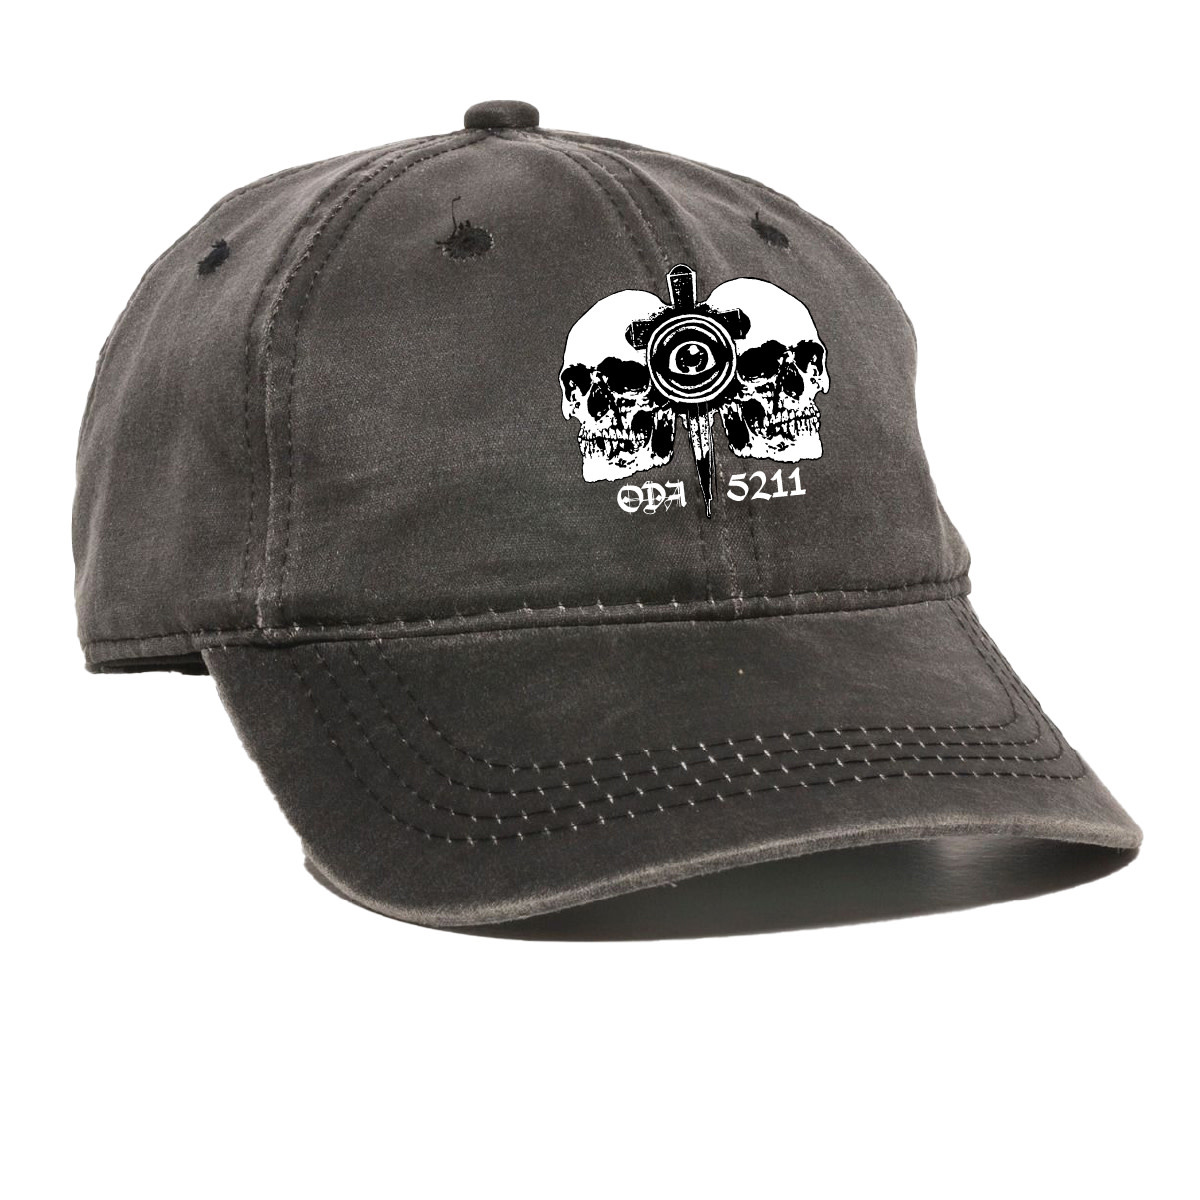 Outdoor Cap Outdoor Cap HPG-605 (Black)